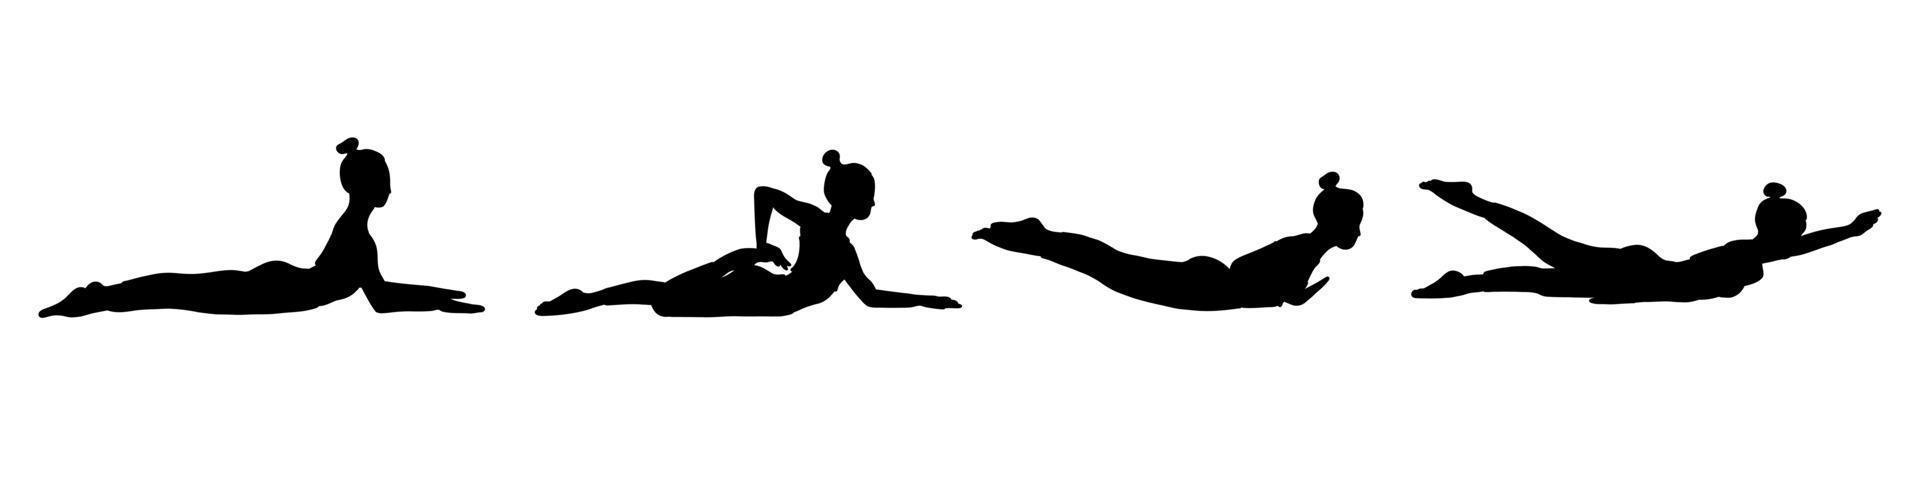 coleção de poses de ioga. sombra negra. menina mulher feminina. ilustração vetorial em estilo cartoon plana isolado no fundo branco. vetor